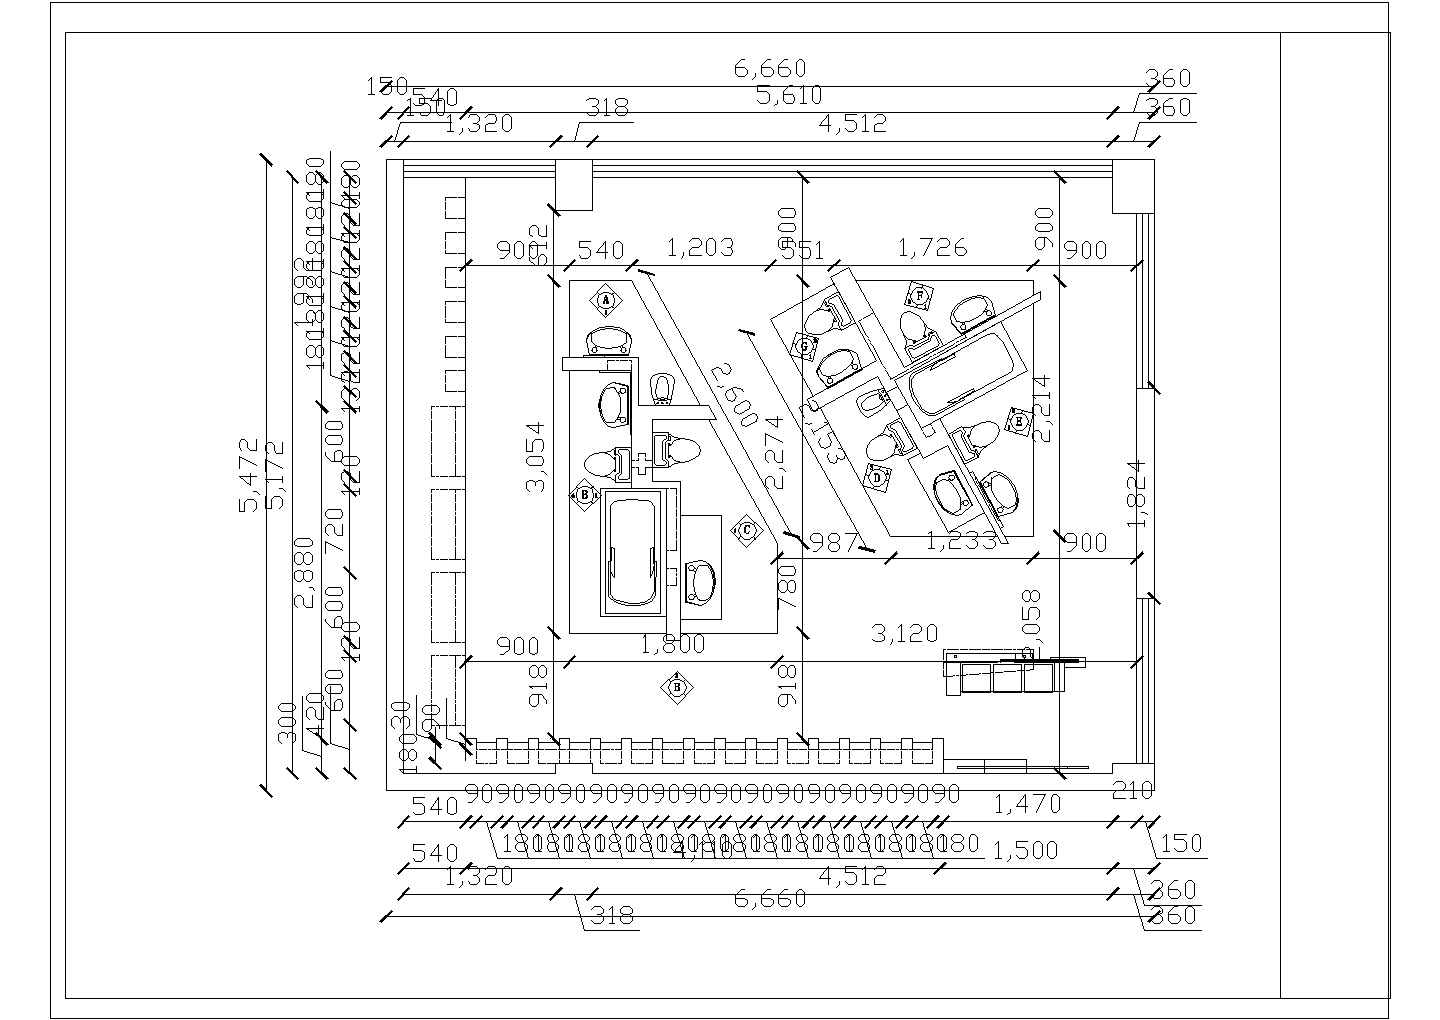 某长6.66米 宽5.472米 洁具展示会装修图纸-洁具展厅CAD室内装修设计图【平面图 室内立面图】